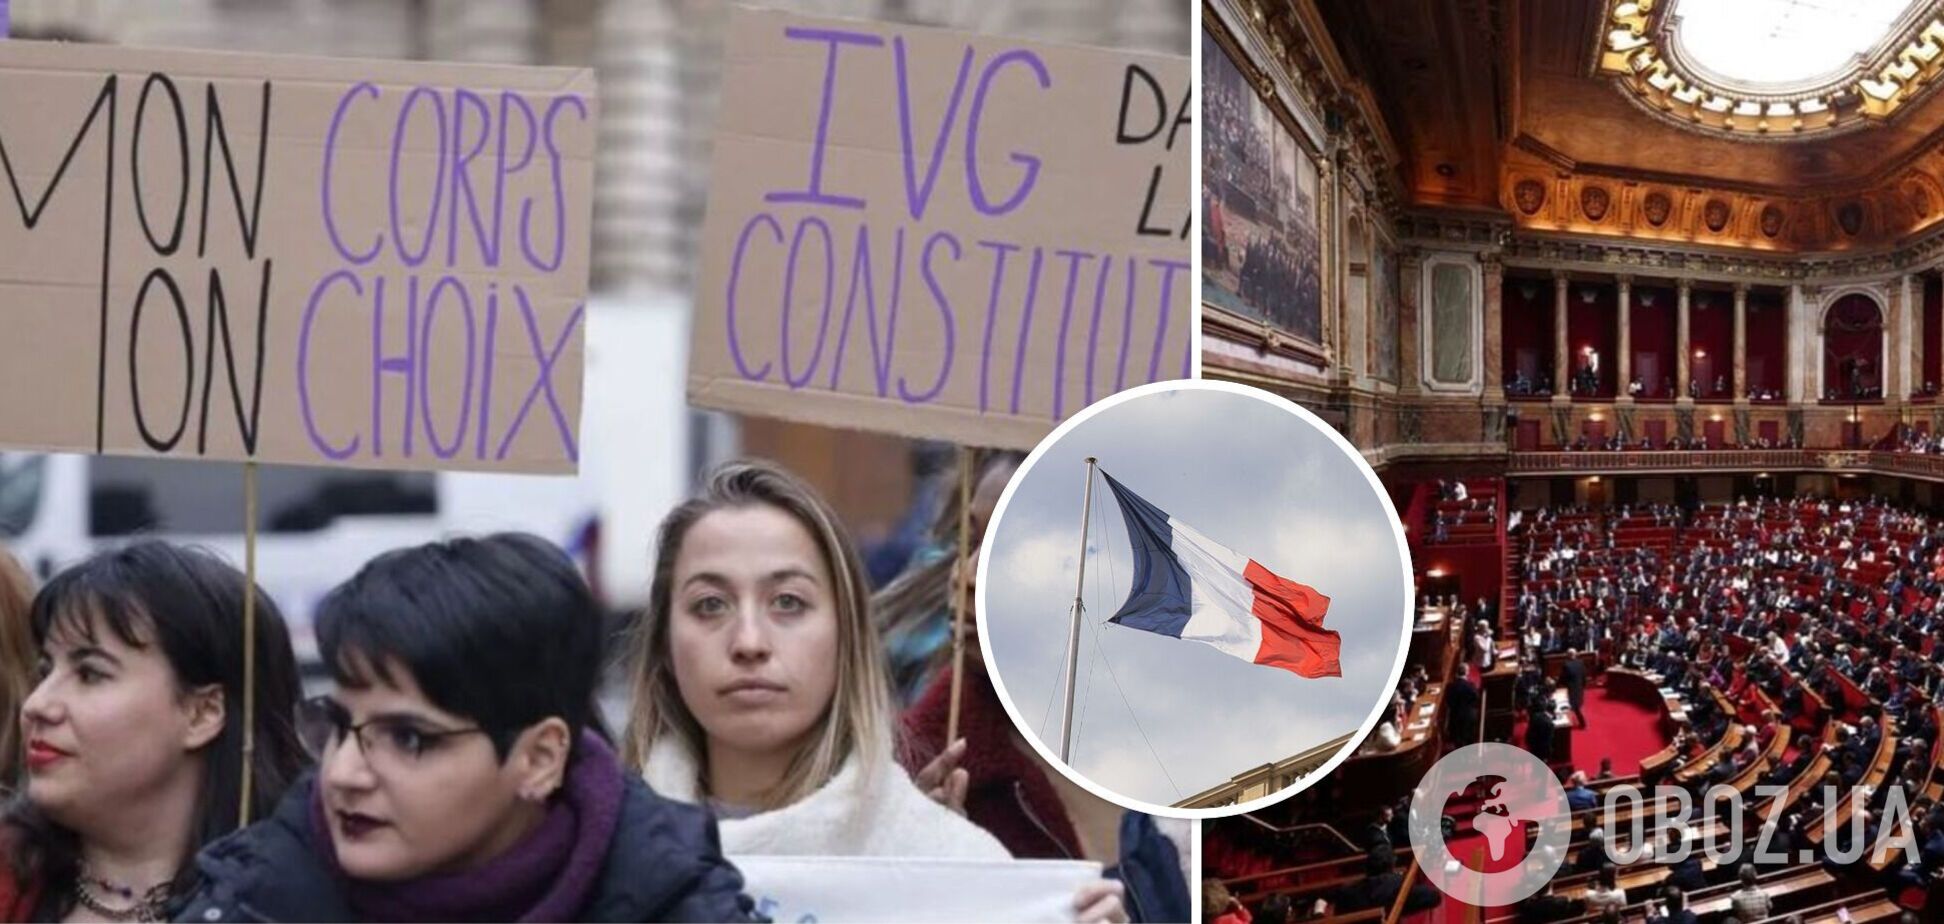 Франція першою у світі внесла у конституцію право на аборт

